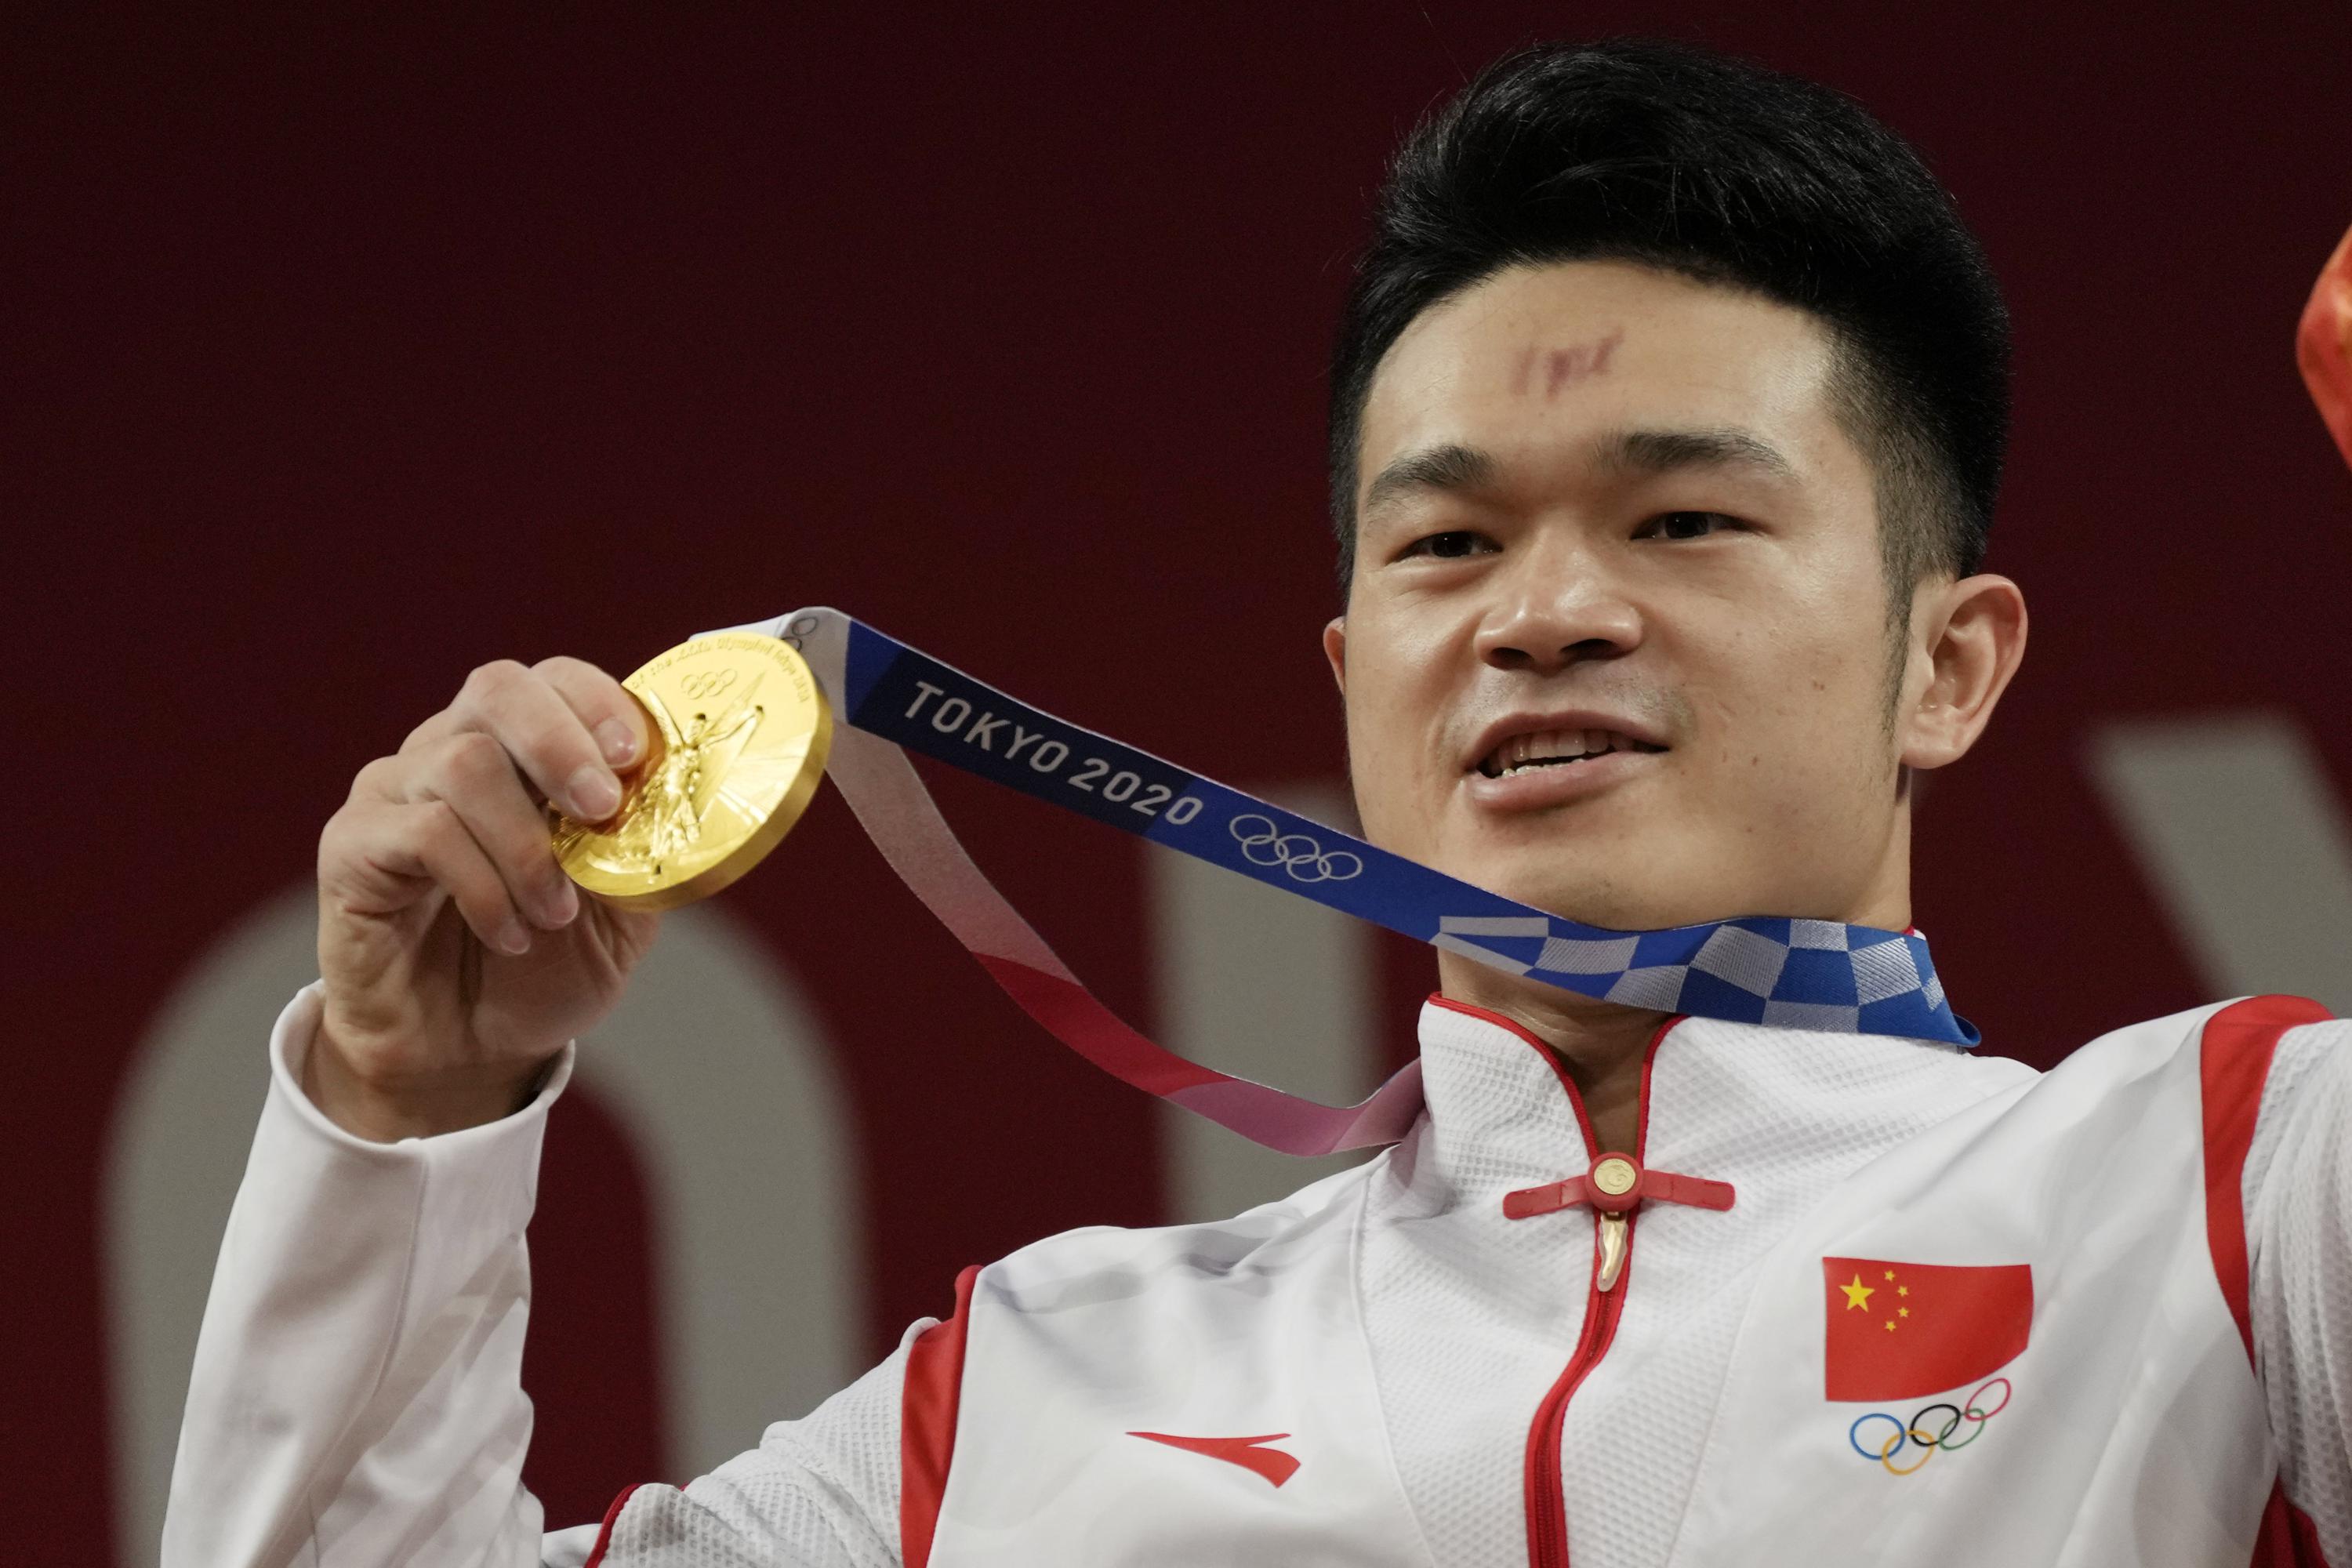 El chino Shi rompe el récord de ganar el oro en levantamiento de pesas